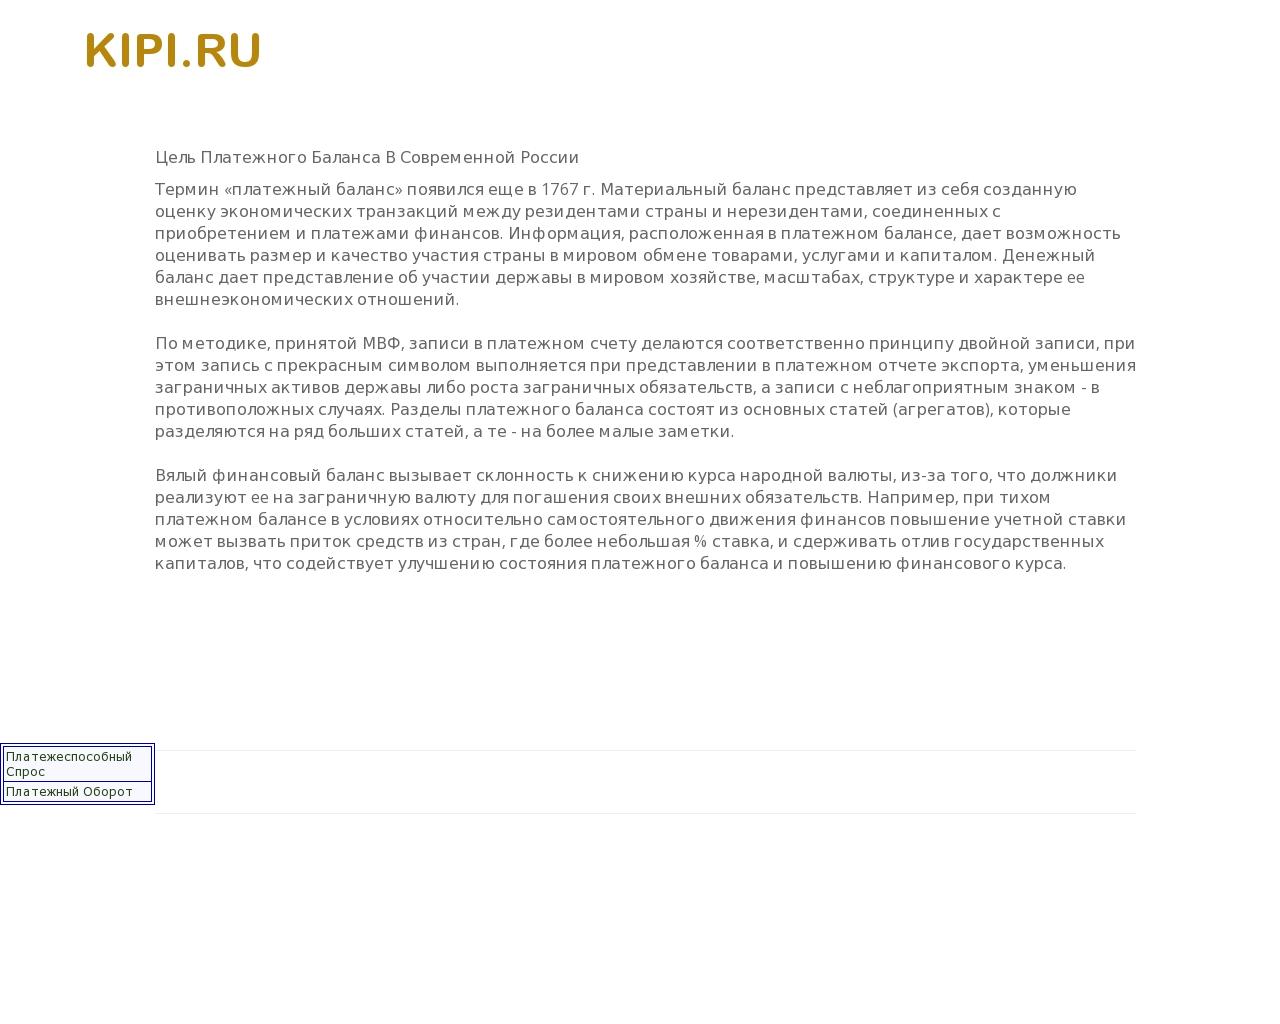 Изображение сайта kipi.ru в разрешении 1280x1024